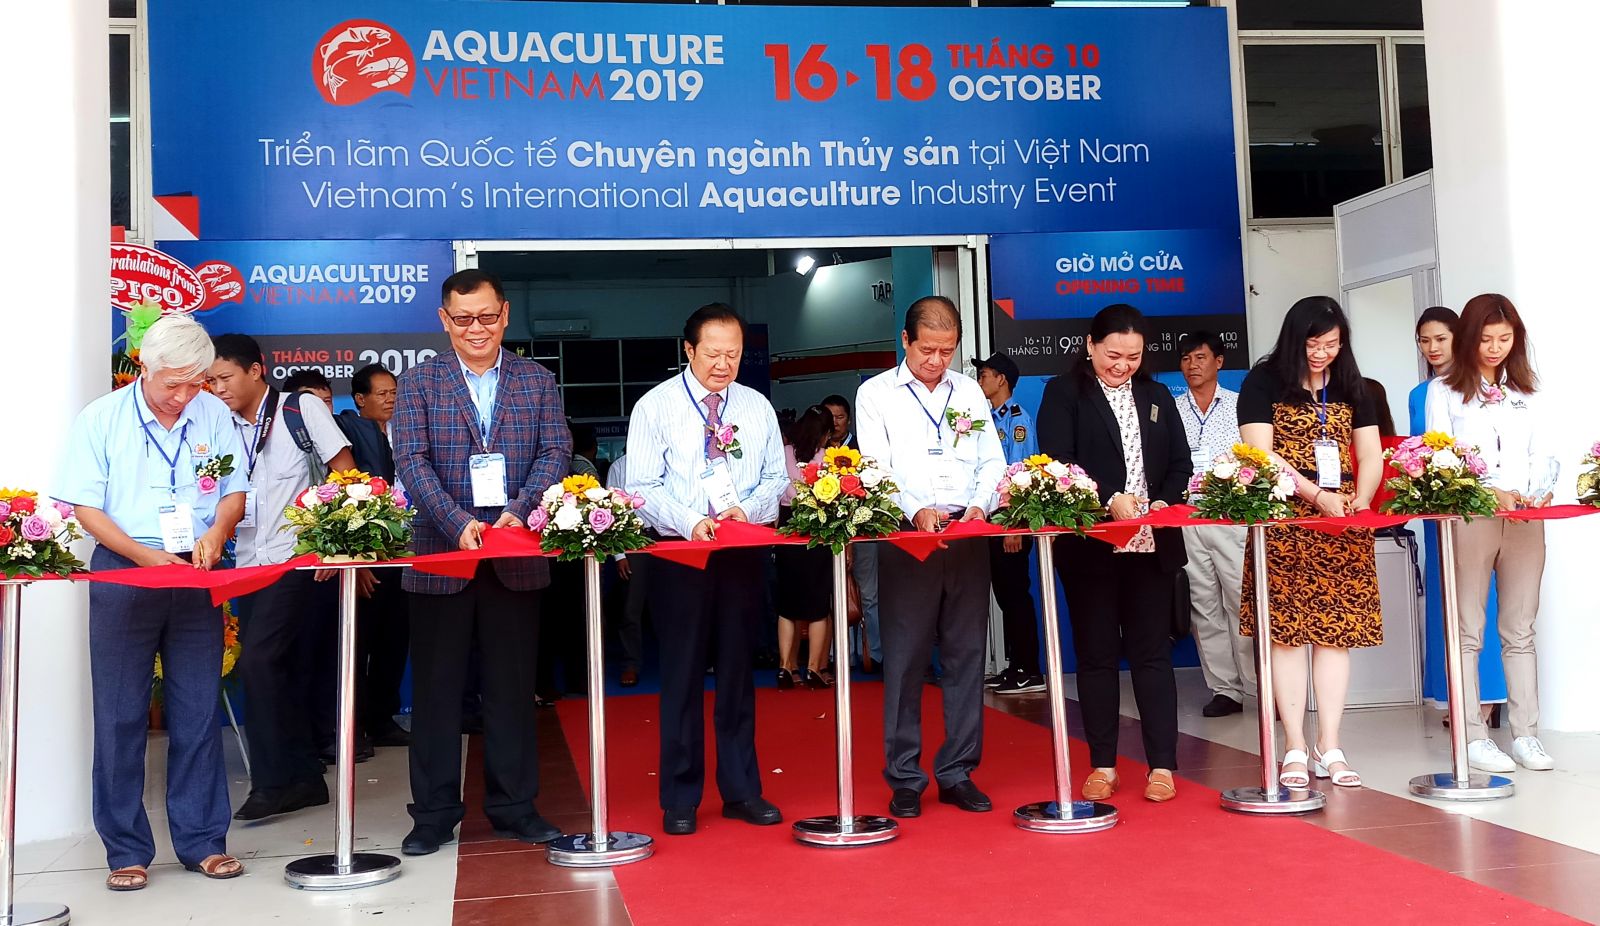 Hình ảnh lễ khai mạc Aquaculture Việt Nam năm 2019